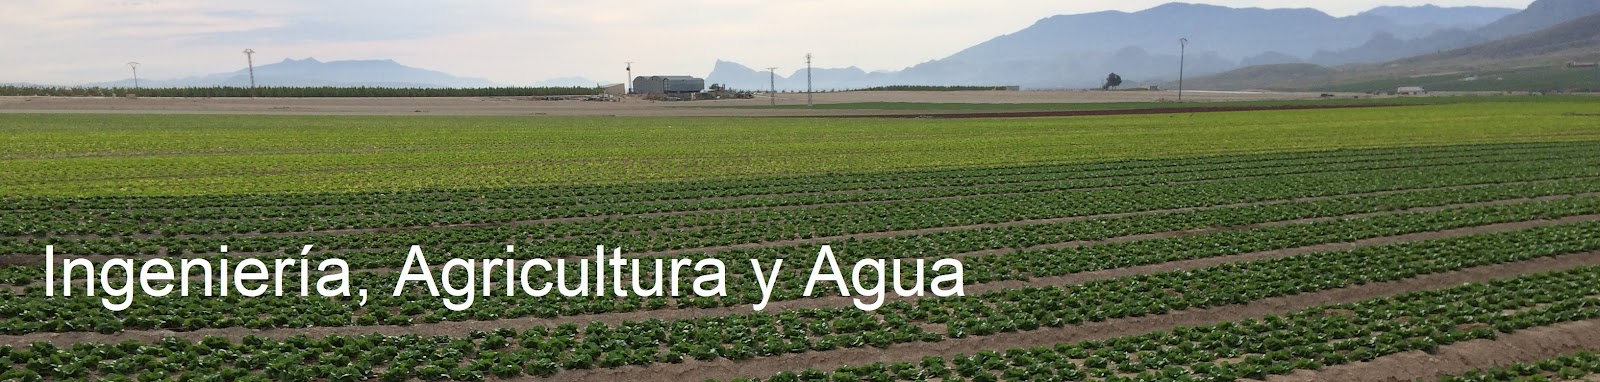 agricultura, agua y riego